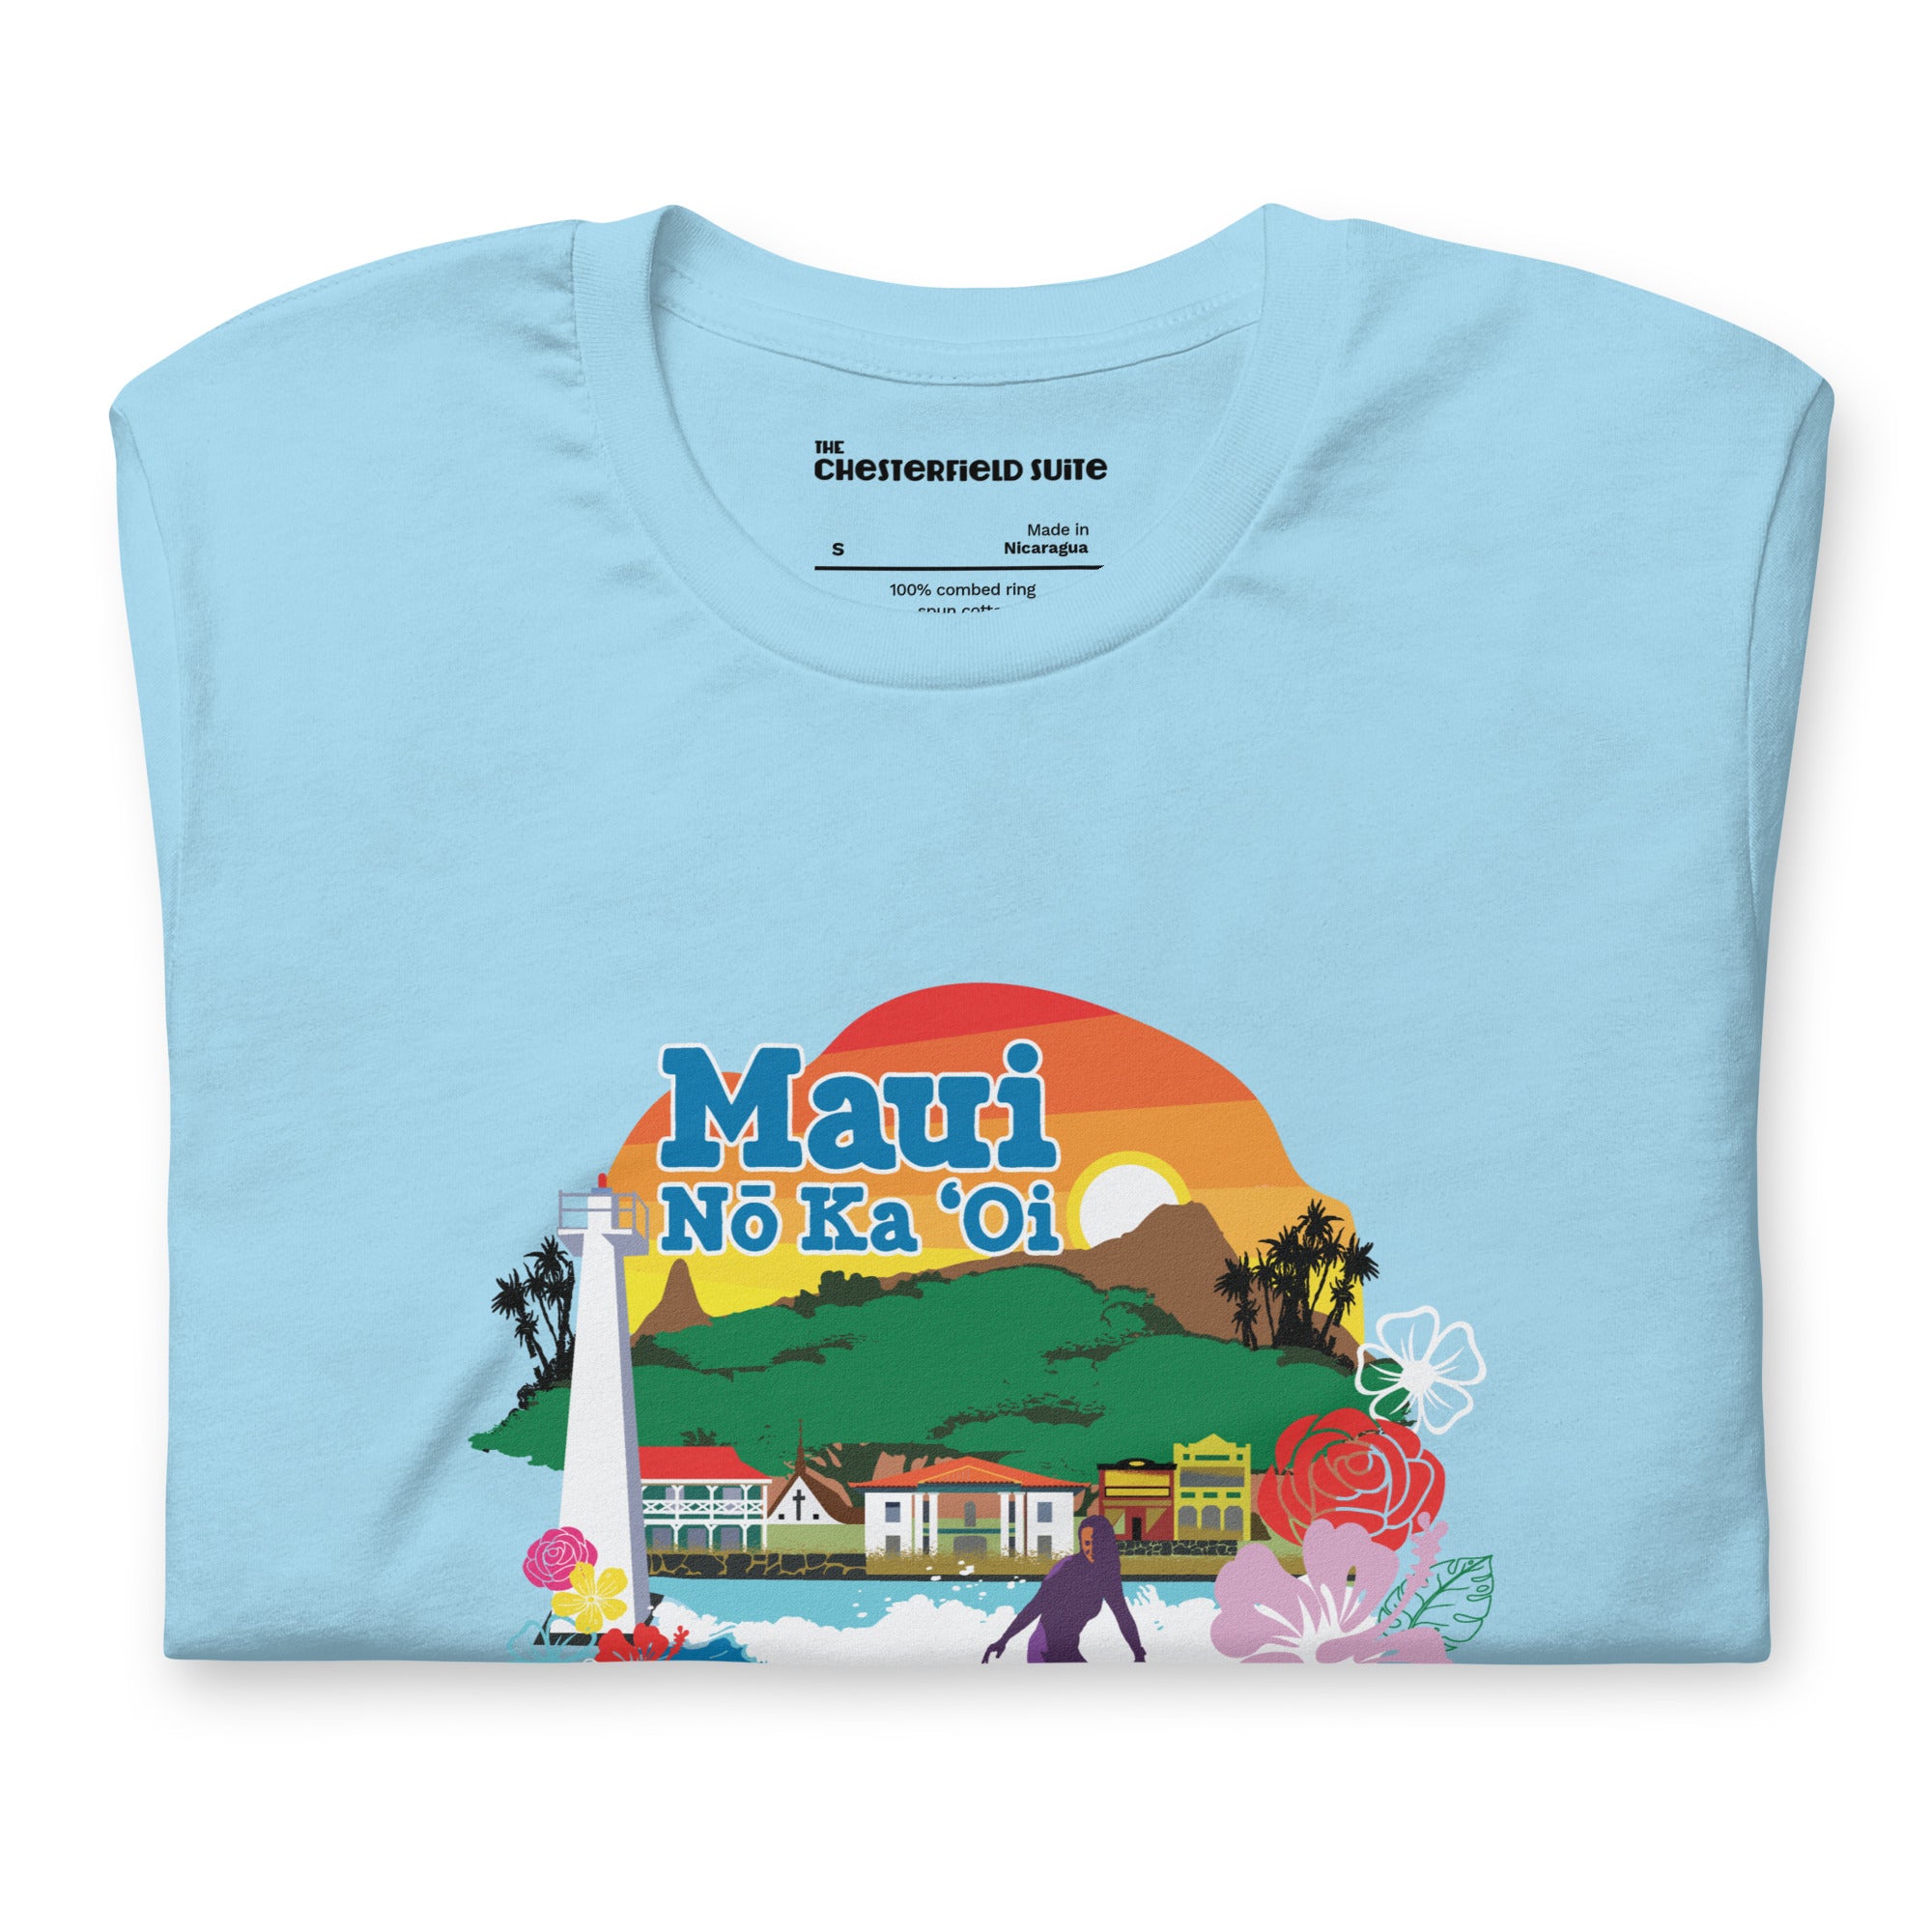 folded light blue t-shirt maui no ka oi design with lahaina landmarks to donate to maui strong fund